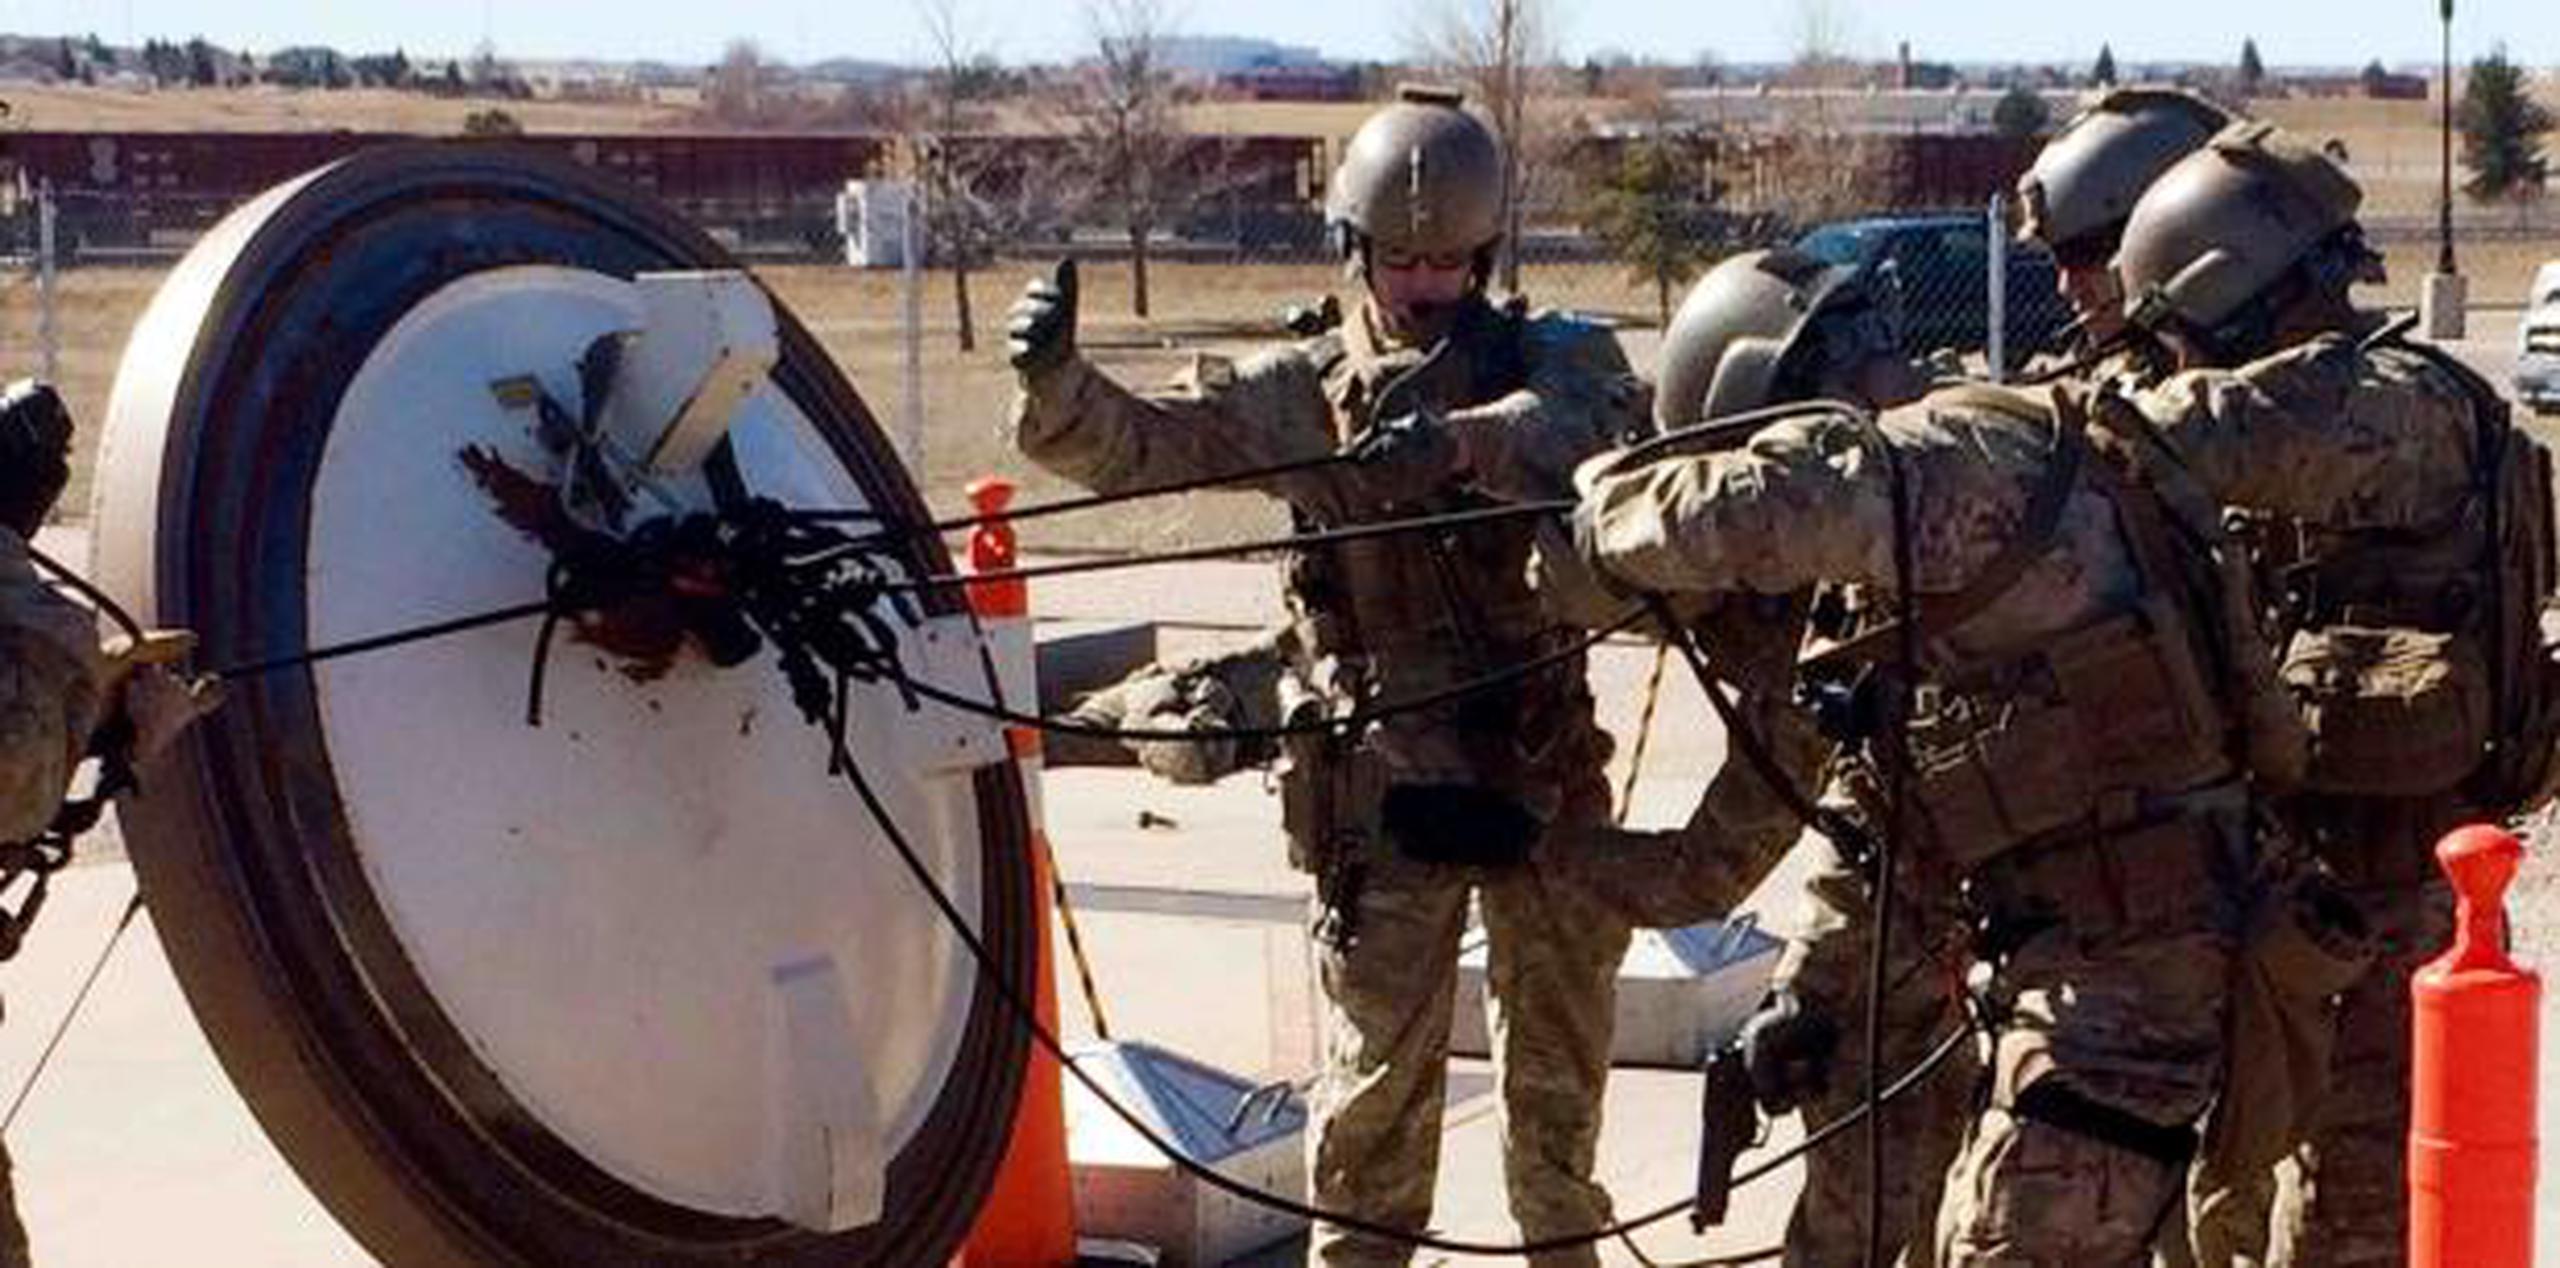 Soldados de la Base de la Fuerza Aérea de F.E. Warren, donde se detectó el uso de estas sustancias, en un ejercicio realizad o en febrero de 2016. (AP)